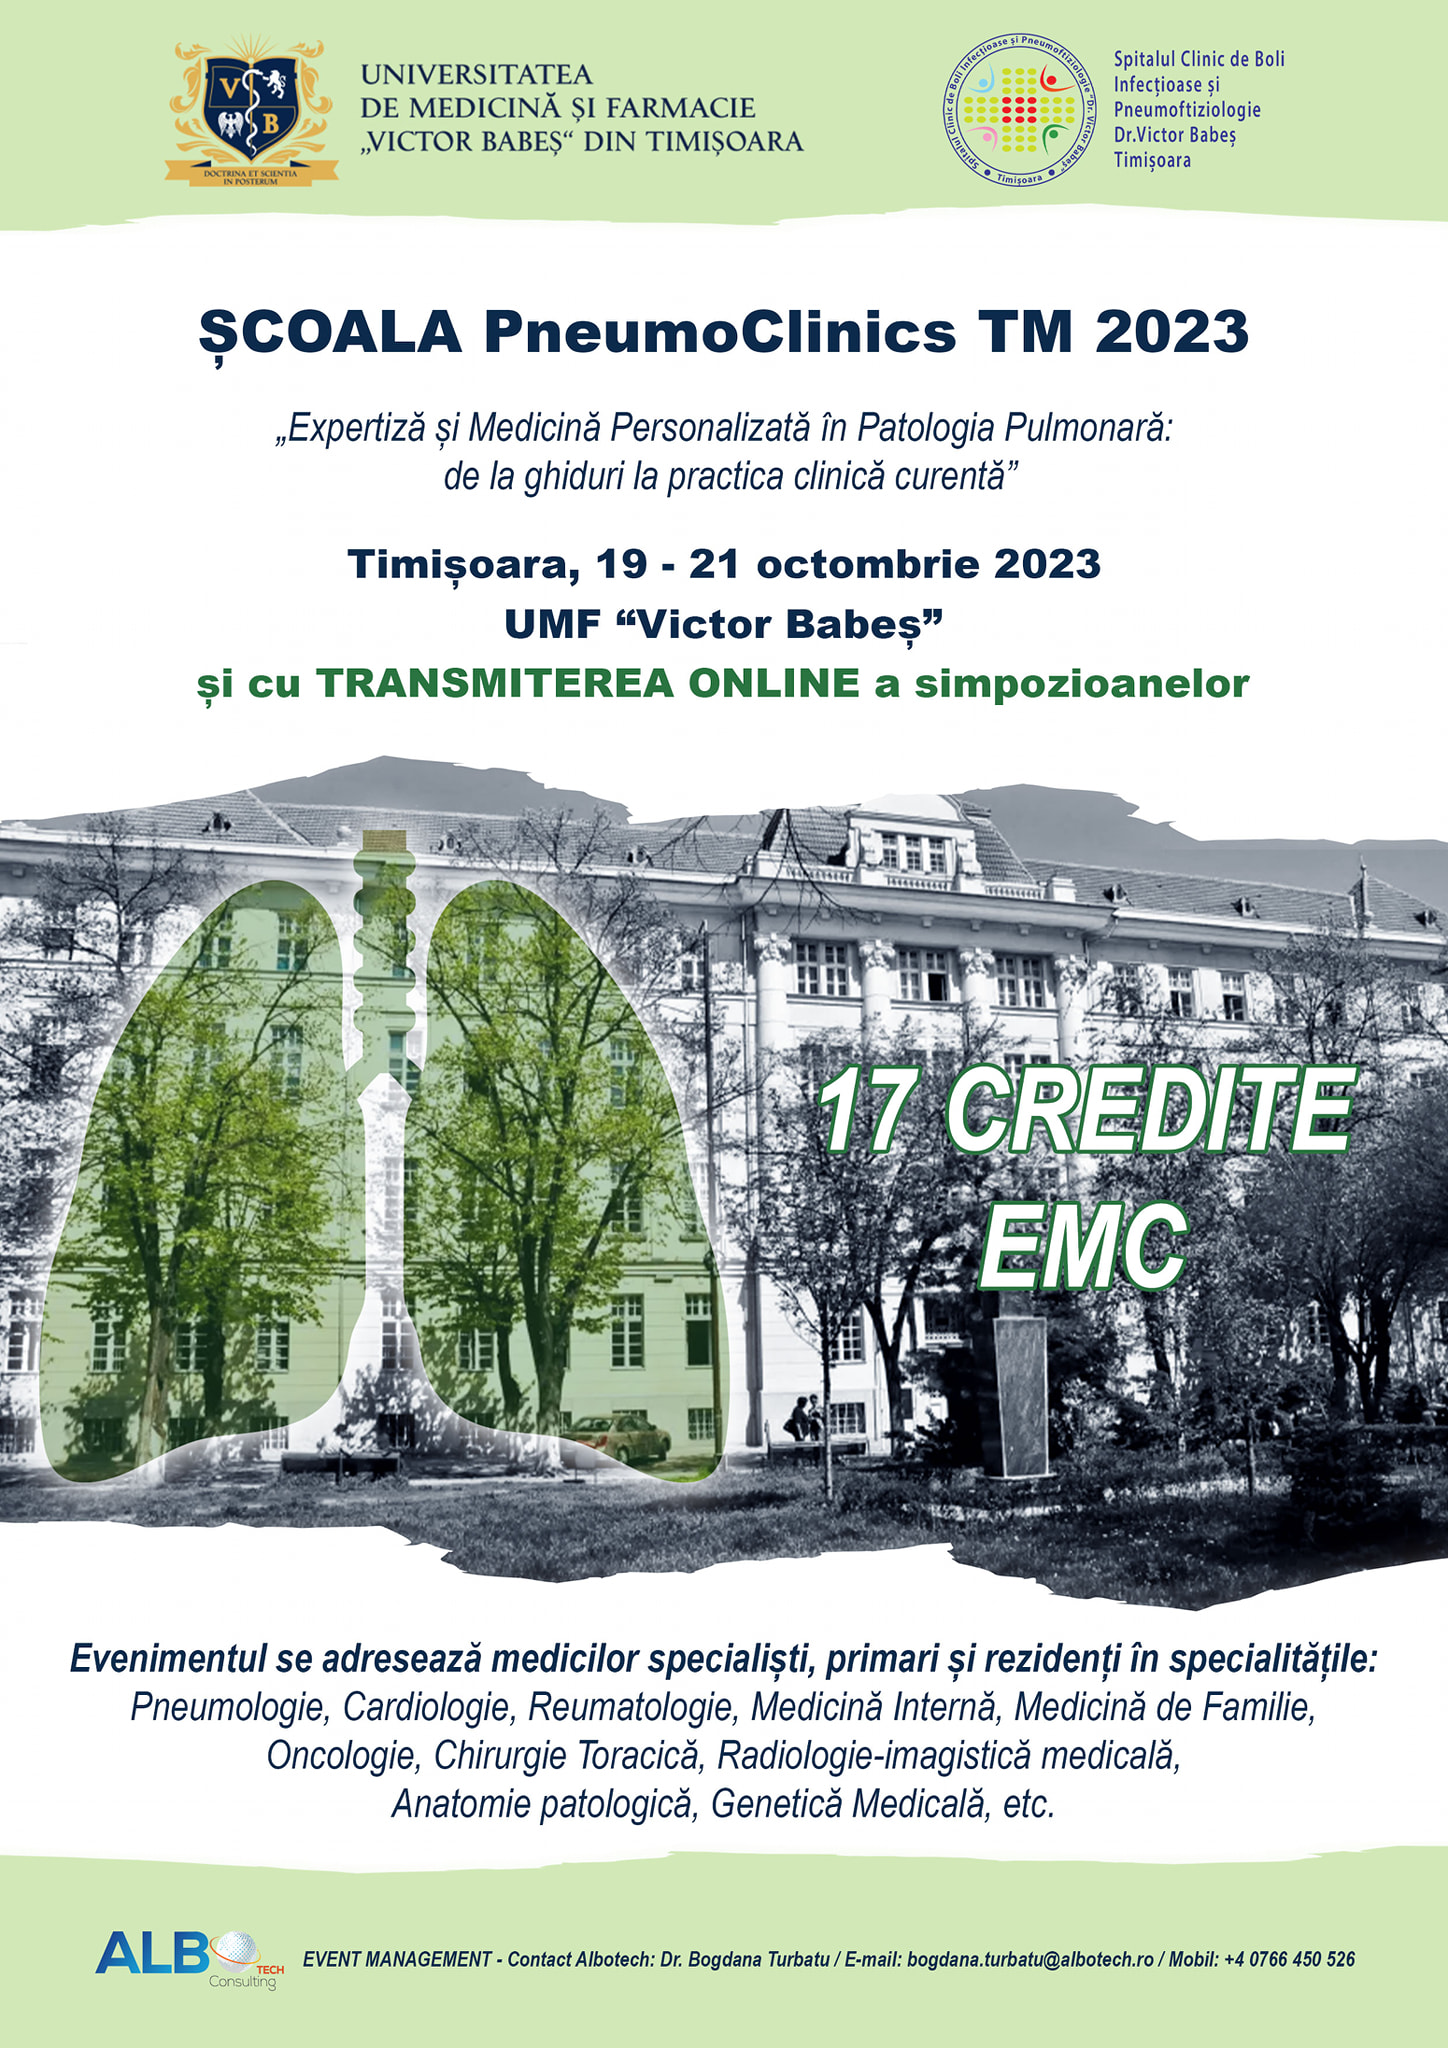 Conferința „Școala PneumoClinics TM 2023” are loc în perioada 19-21 octombrie 